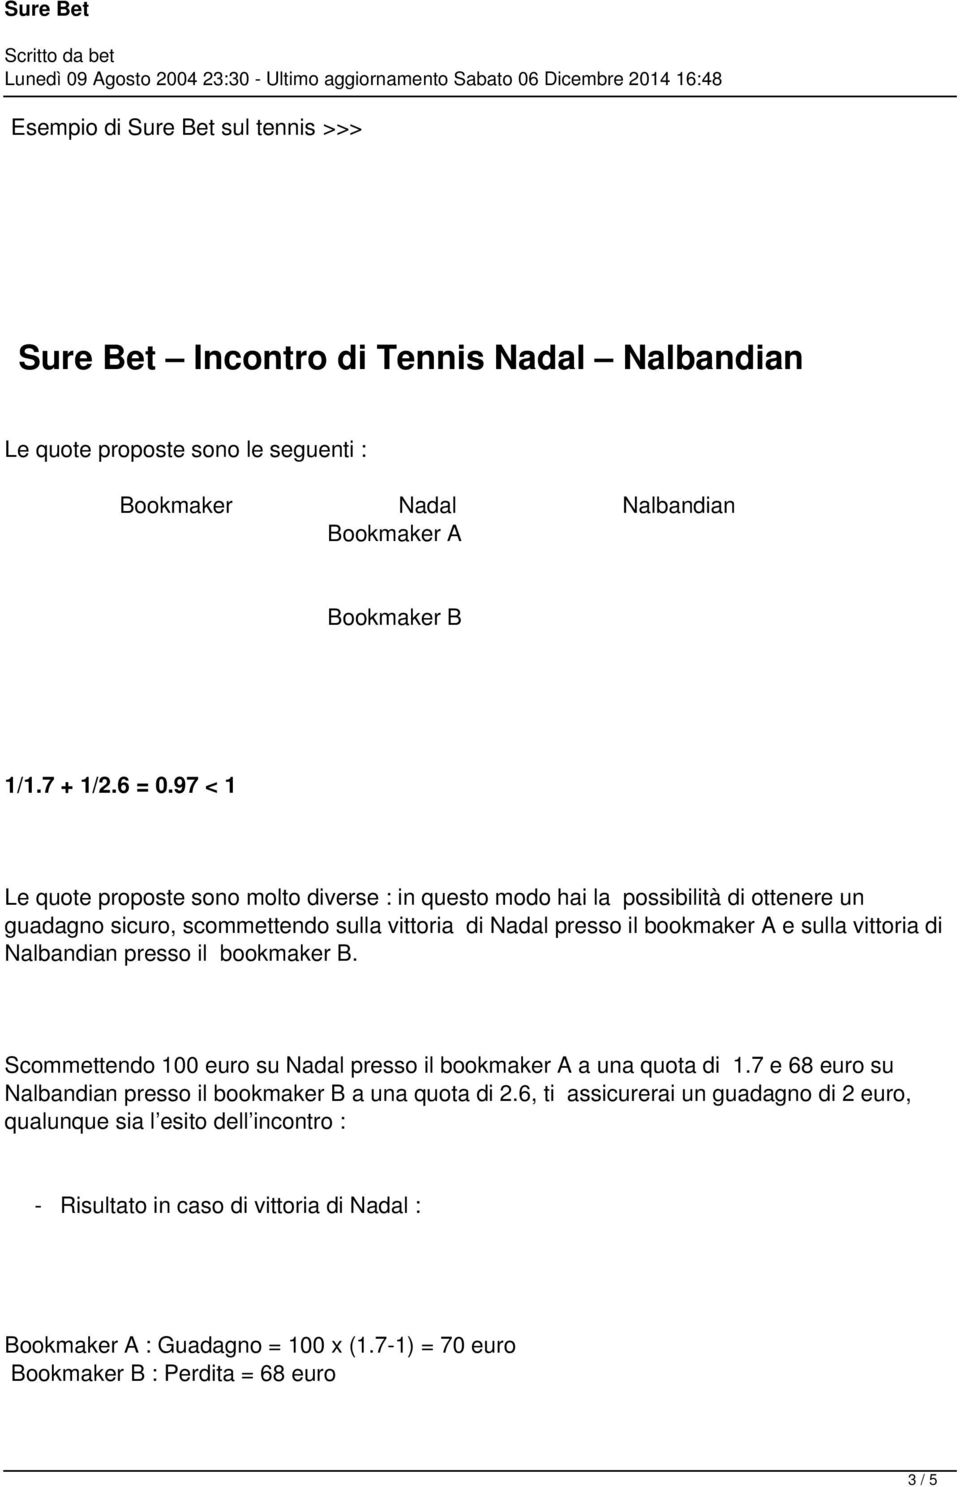 di Nalbandian presso il bookmaker B. Scommettendo 100 euro su Nadal presso il bookmaker A a una quota di 1.7 e 68 euro su Nalbandian presso il bookmaker B a una quota di 2.